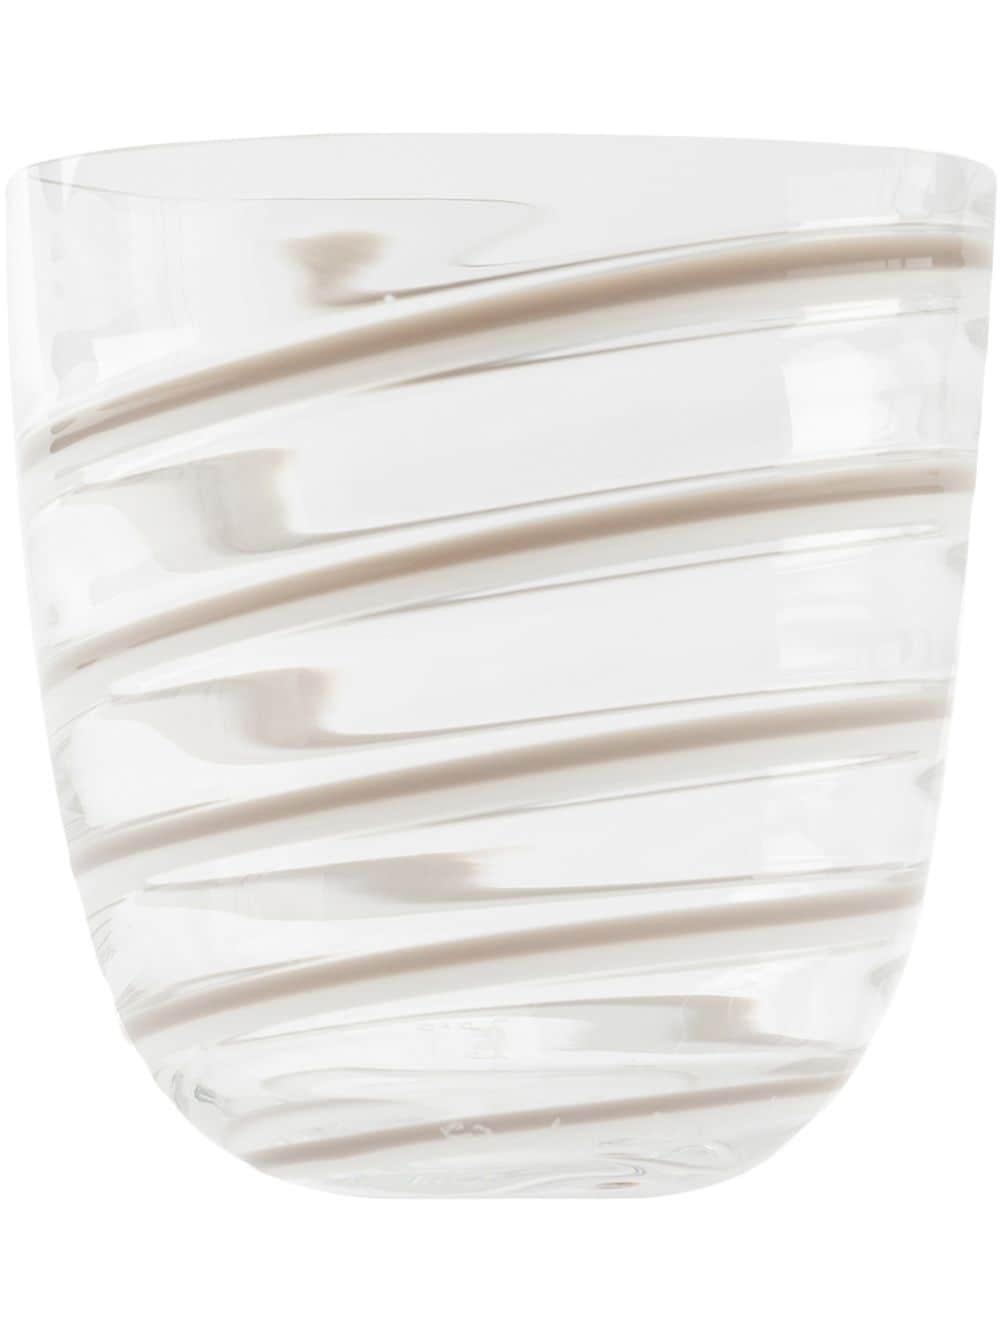 Carlo Moretti water glass - Neutrals von Carlo Moretti